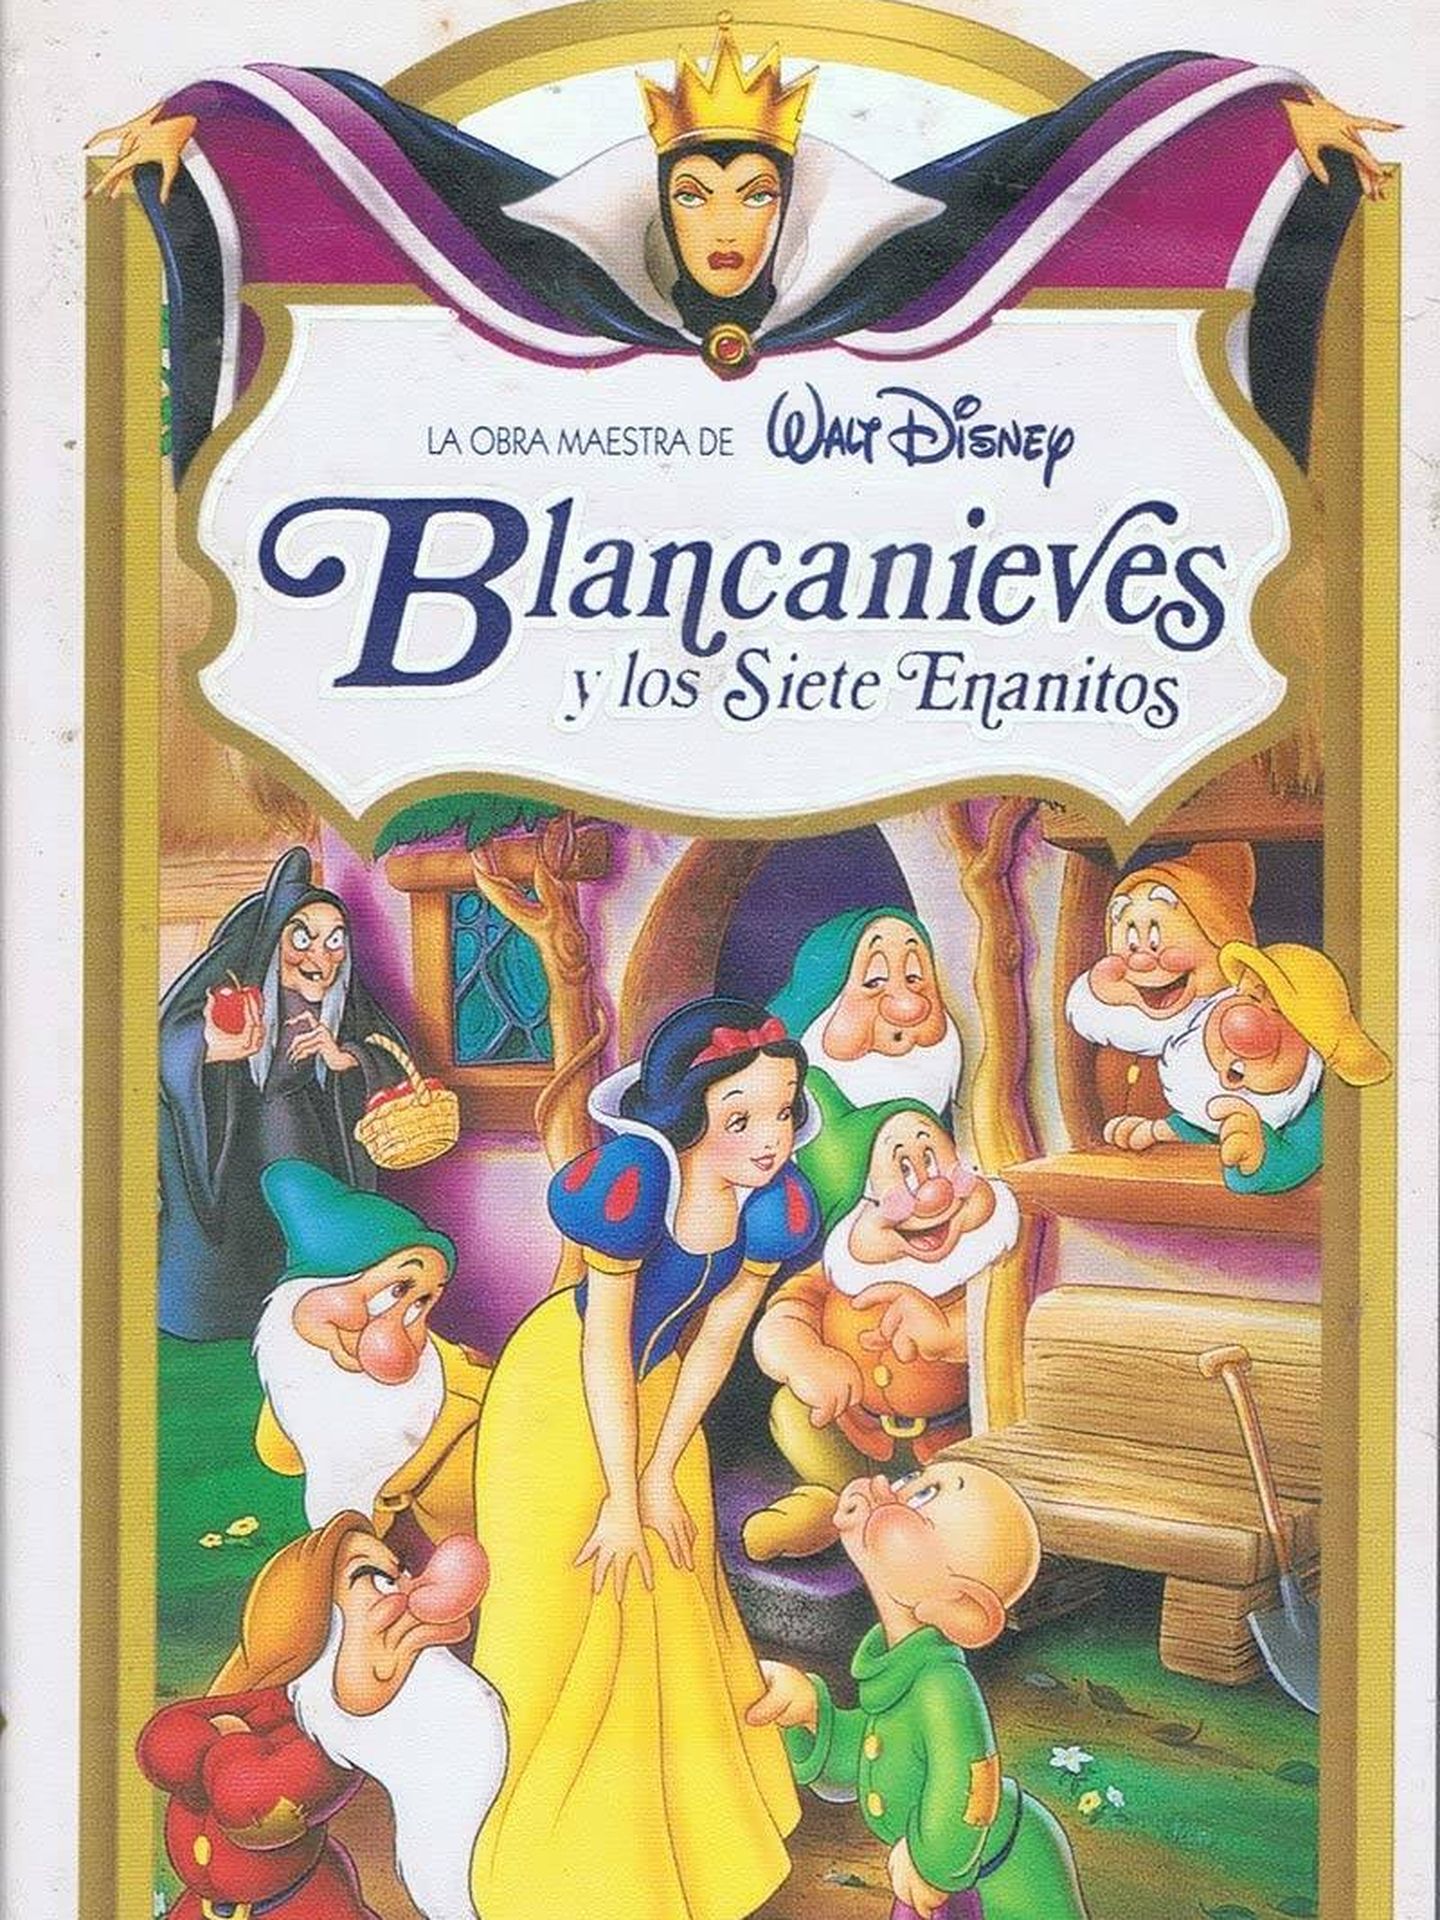 Carátula del VHS de la primera edición de 'Blancanieves y los siete enanitos'. (Disney)